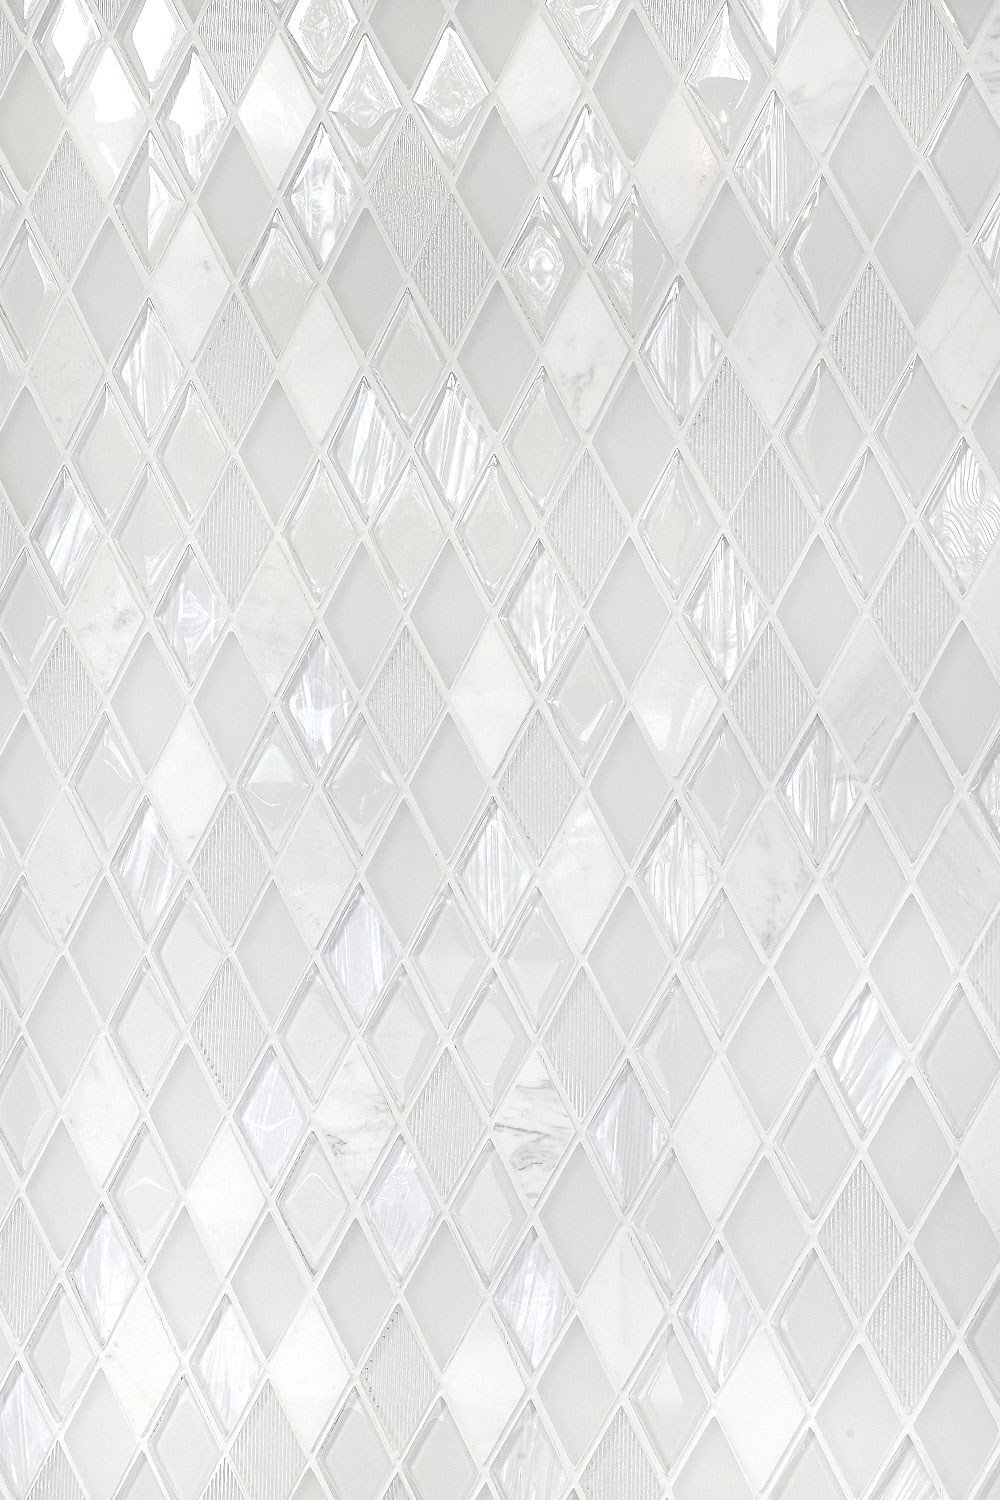 Elegant White Glass Marble Backsplash Tile BA62046 5